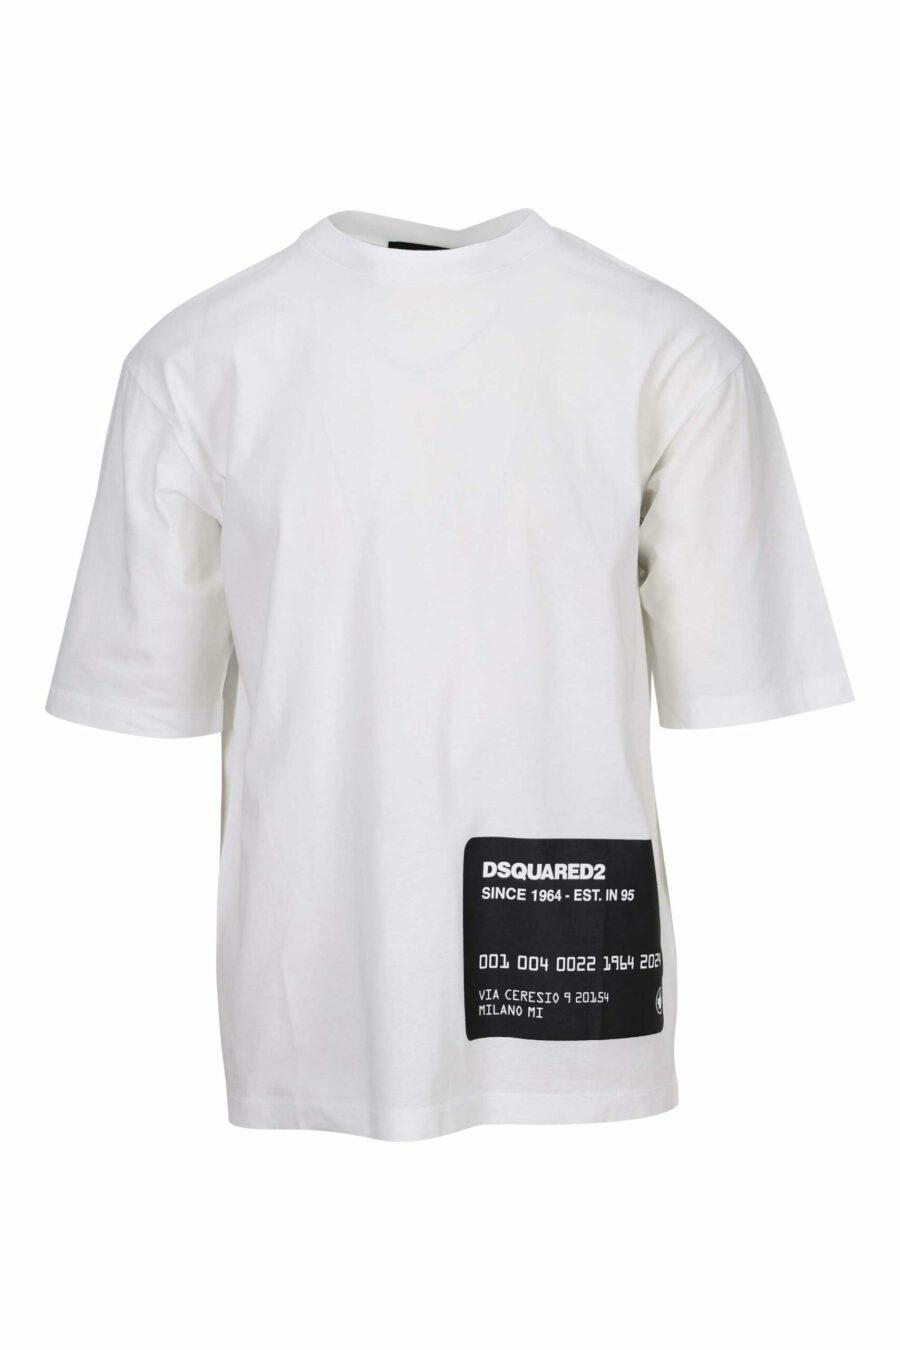 Weißes T-Shirt in Übergröße mit Kreditkartenlogo darunter - 8054148265540 skaliert